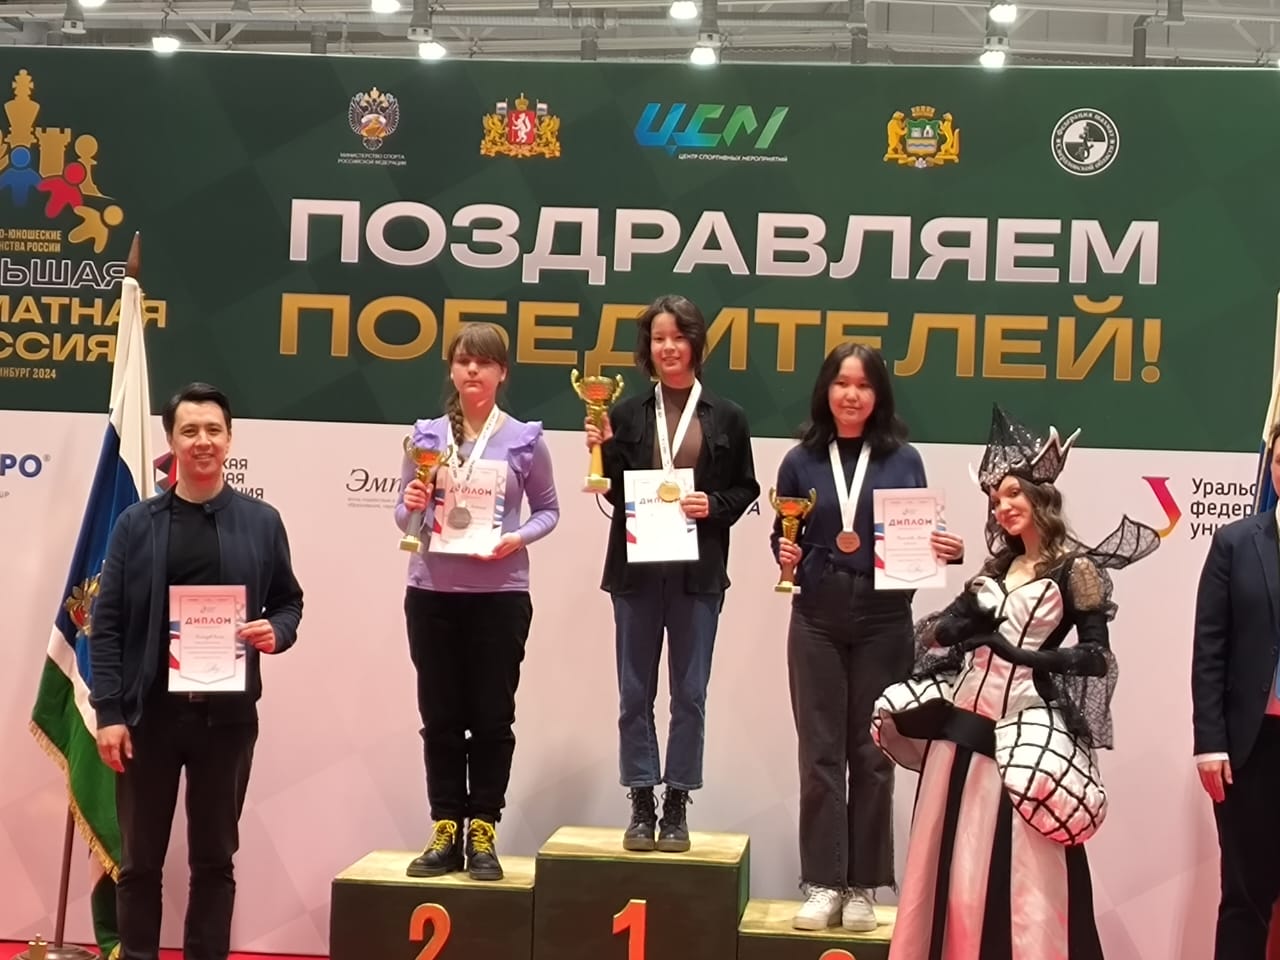 Якутянка стала победительницей Детского первенства России по решению шахматной композиции 